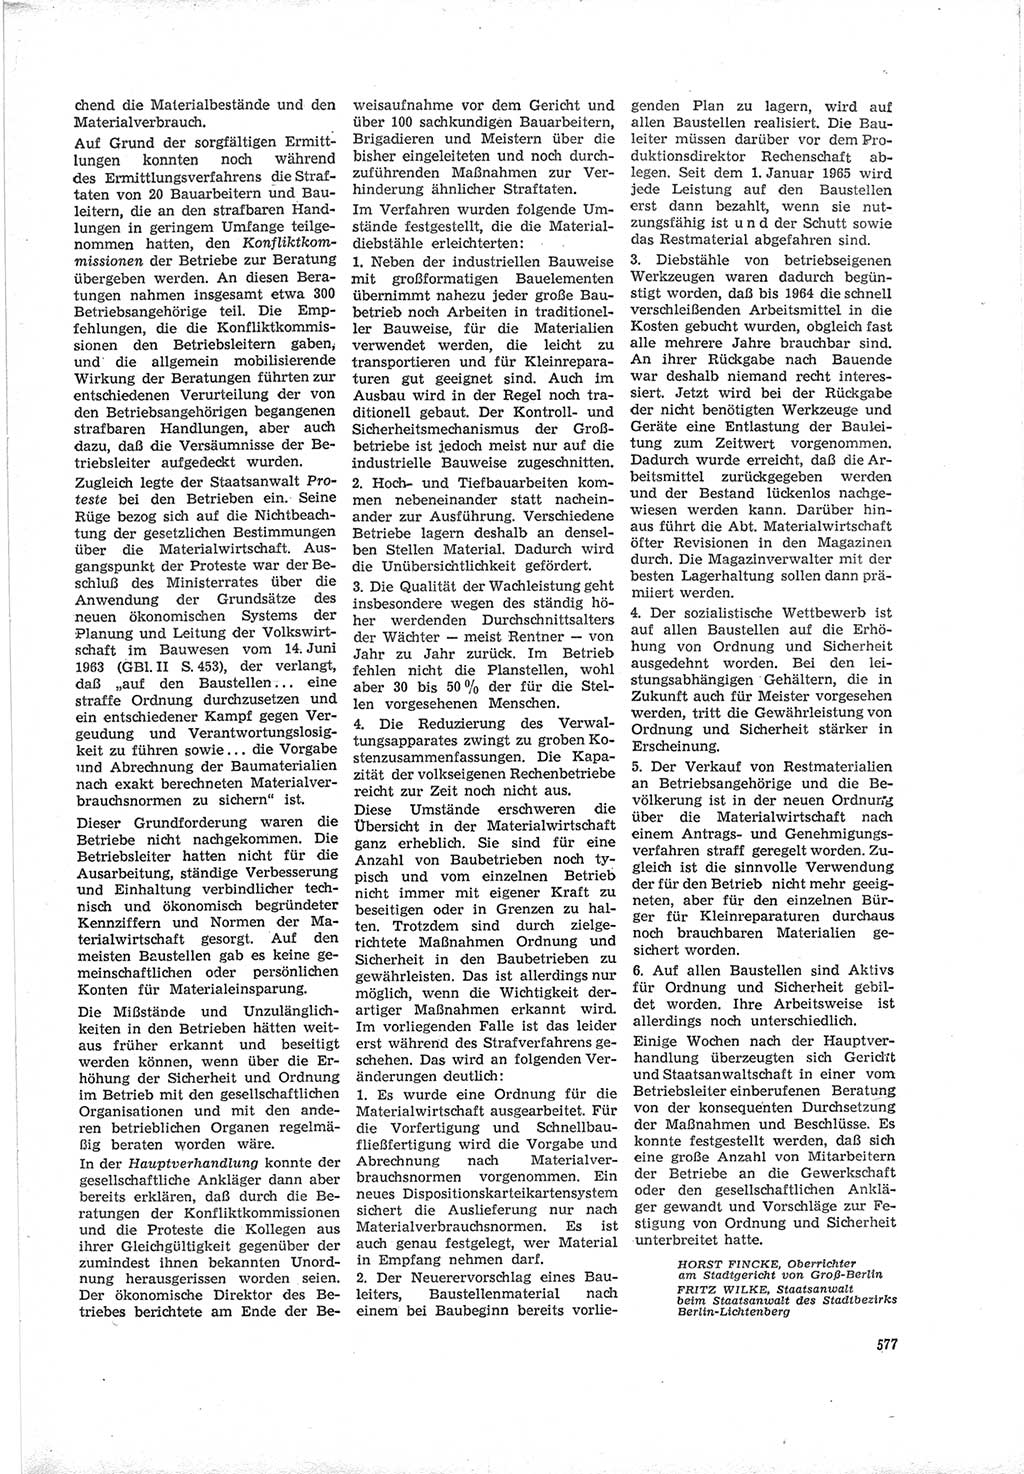 Neue Justiz (NJ), Zeitschrift für Recht und Rechtswissenschaft [Deutsche Demokratische Republik (DDR)], 19. Jahrgang 1965, Seite 577 (NJ DDR 1965, S. 577)